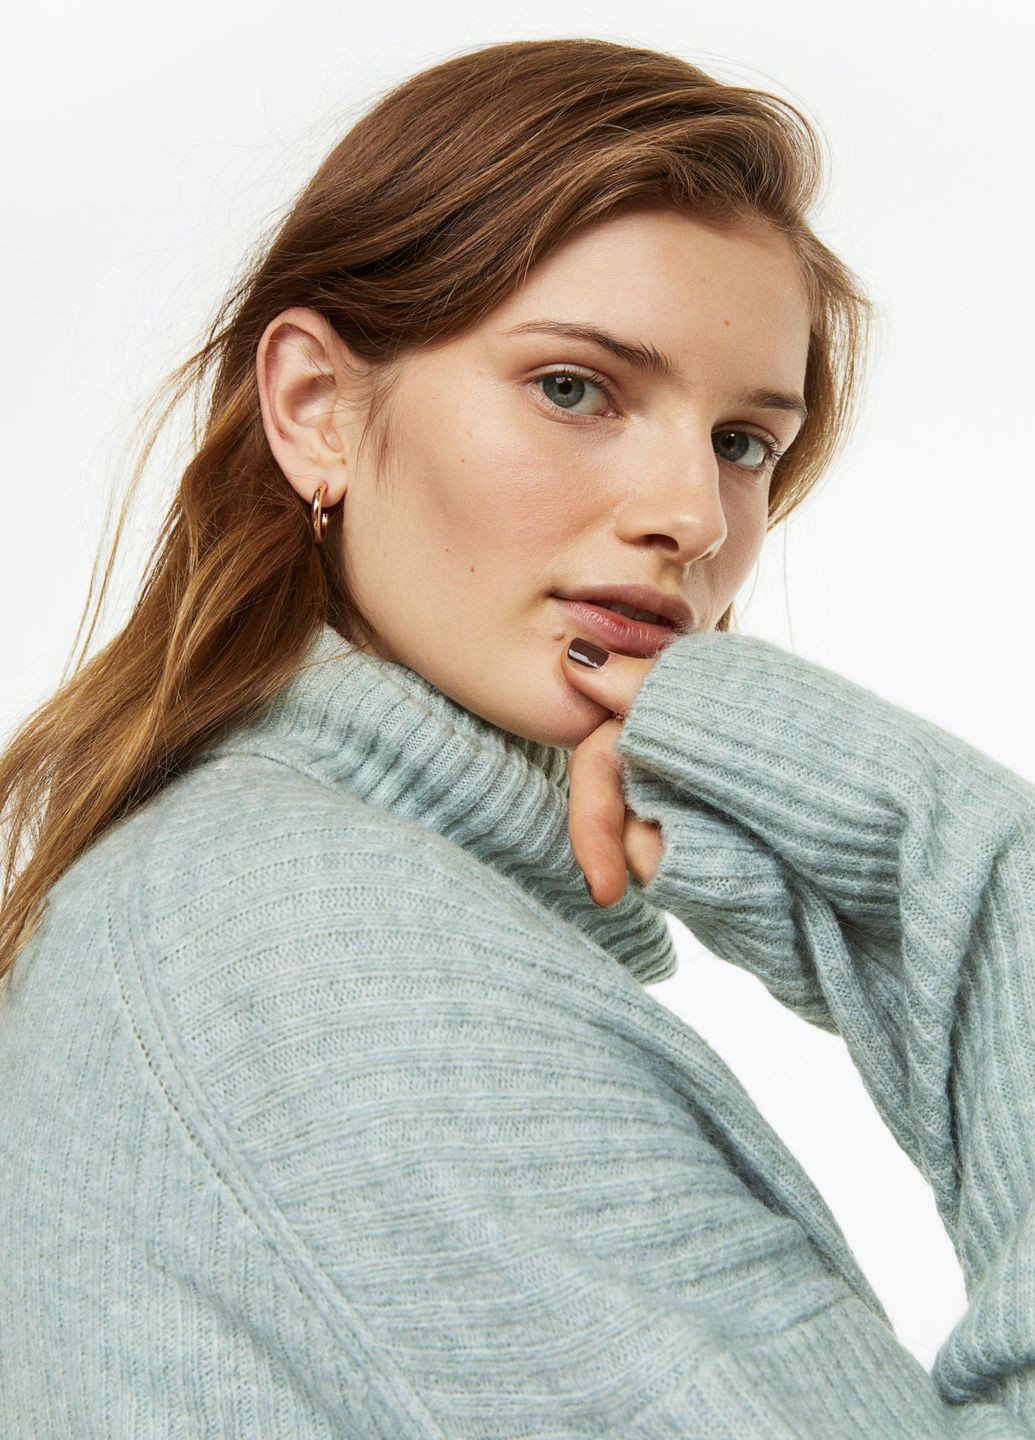 Светло-зеленый зимний свитер-водолазка H&M